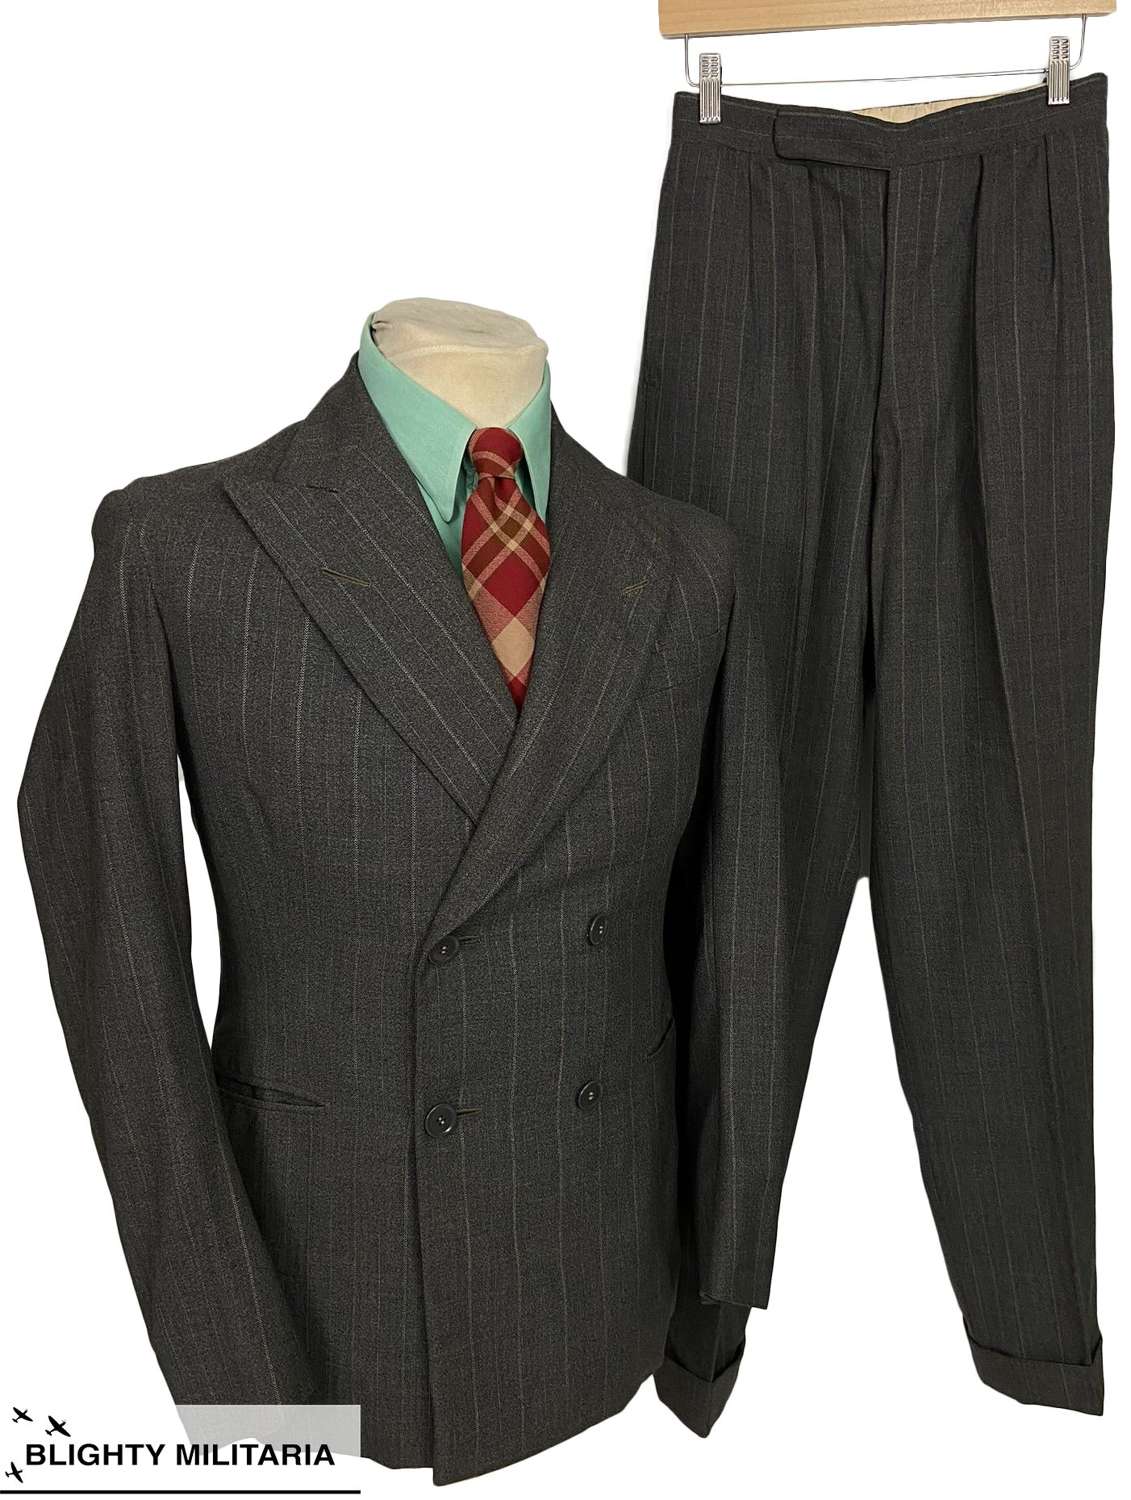 Original 1940 Dated British Grey Pinstripe Three Piece Suit - Size 36